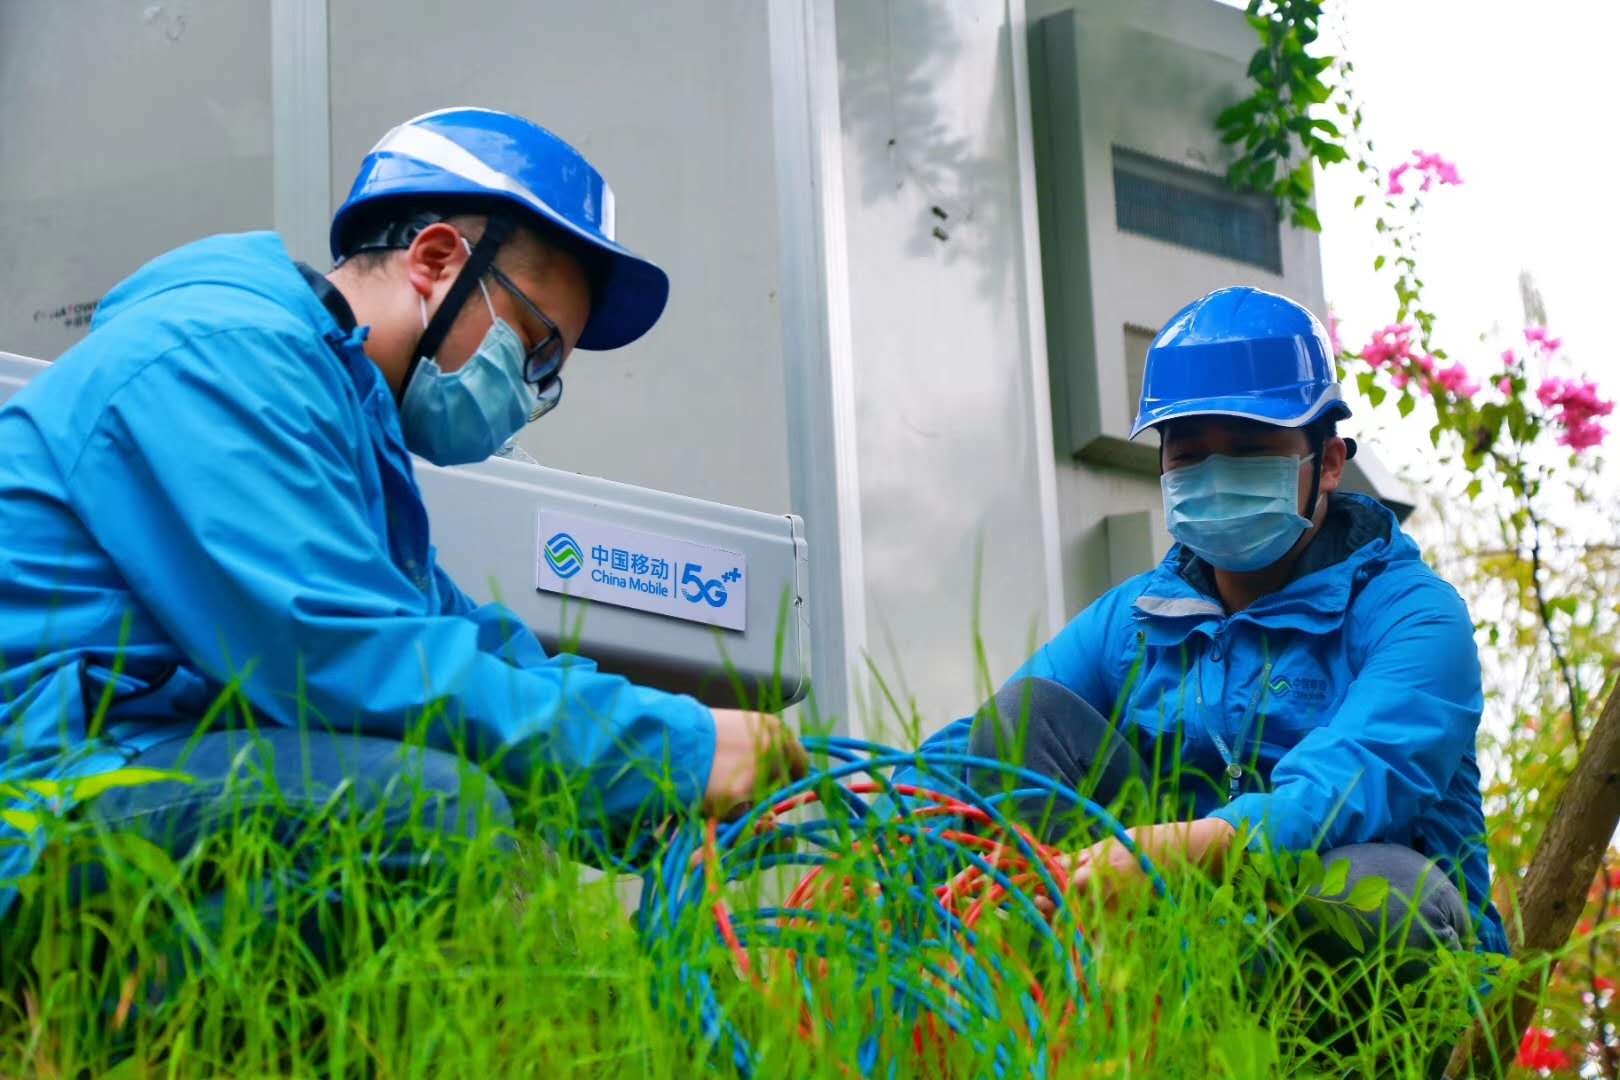 新基建助力新经济新生态共创新生活——广西5G产业发展合作大会在南宁举行